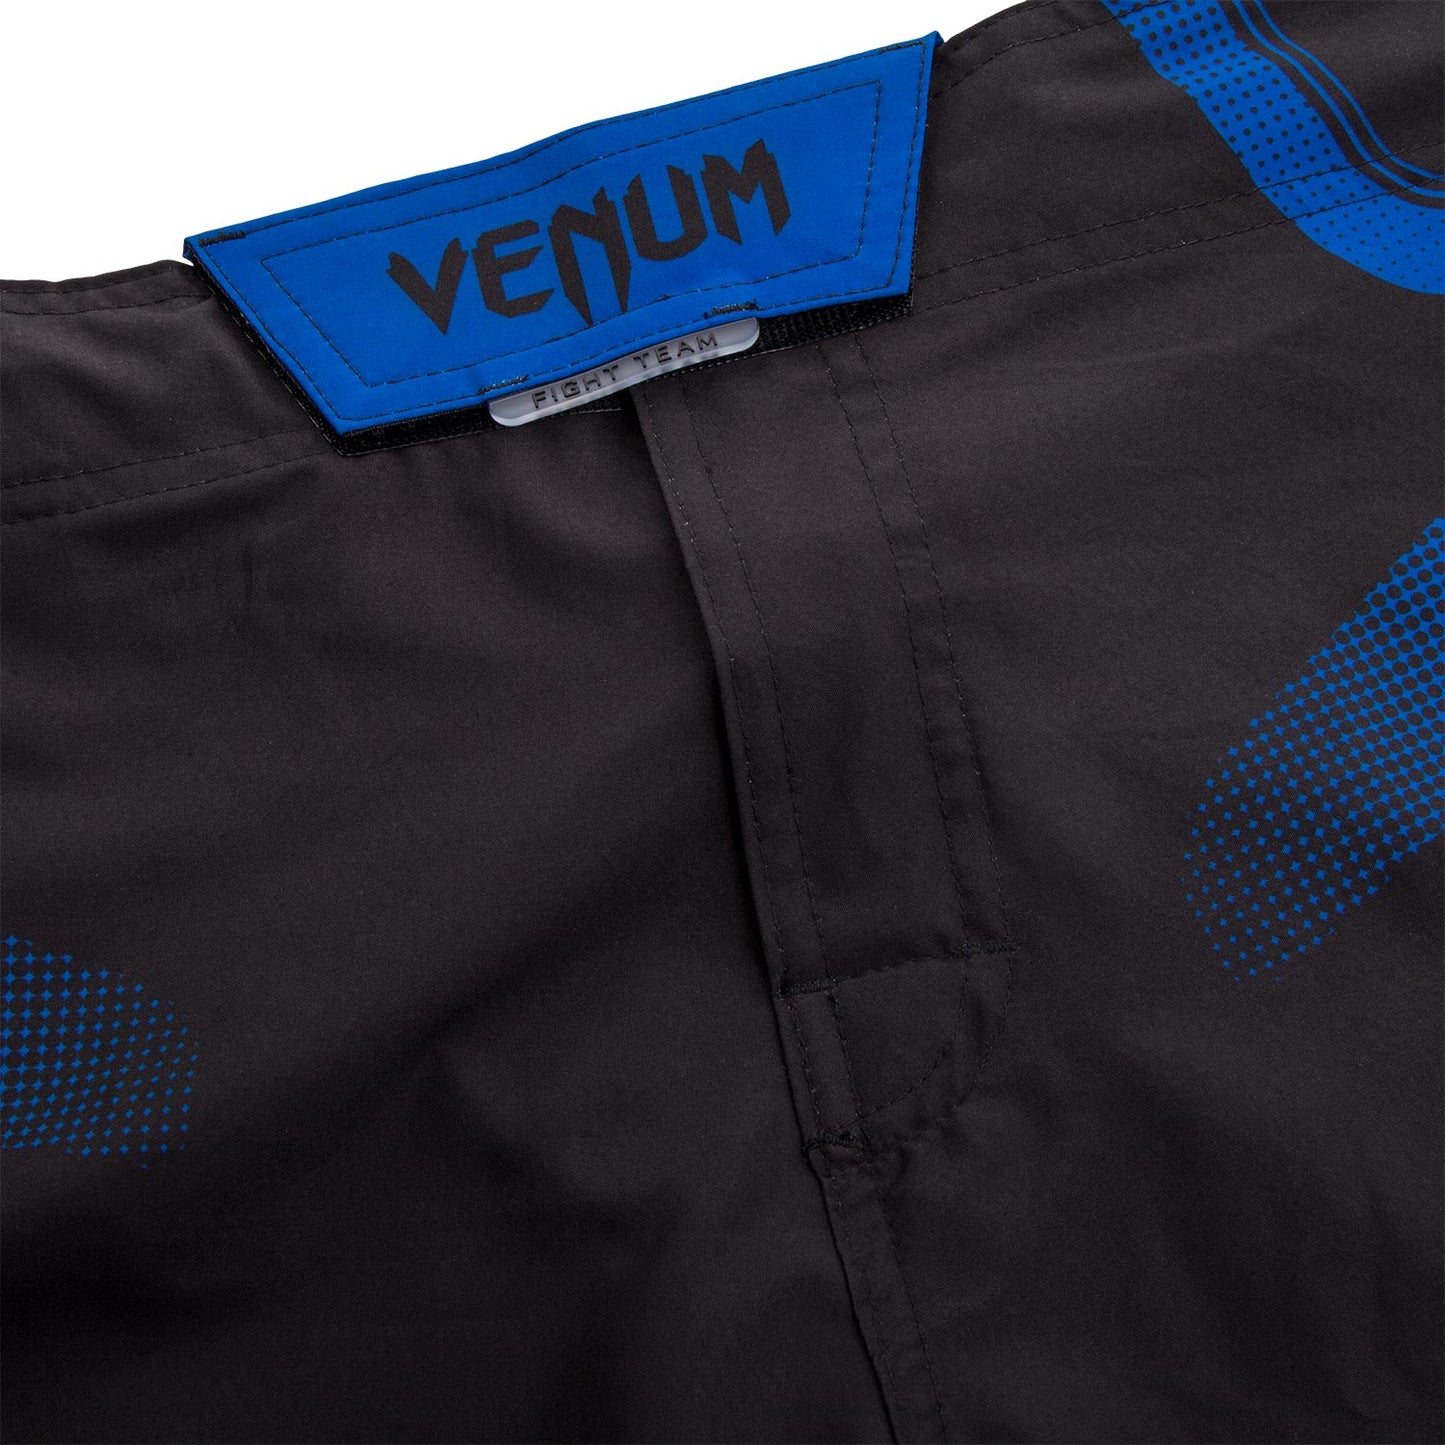 Pantaloncino da combattimento Venum Tempest 2.0 - Nero/Blu